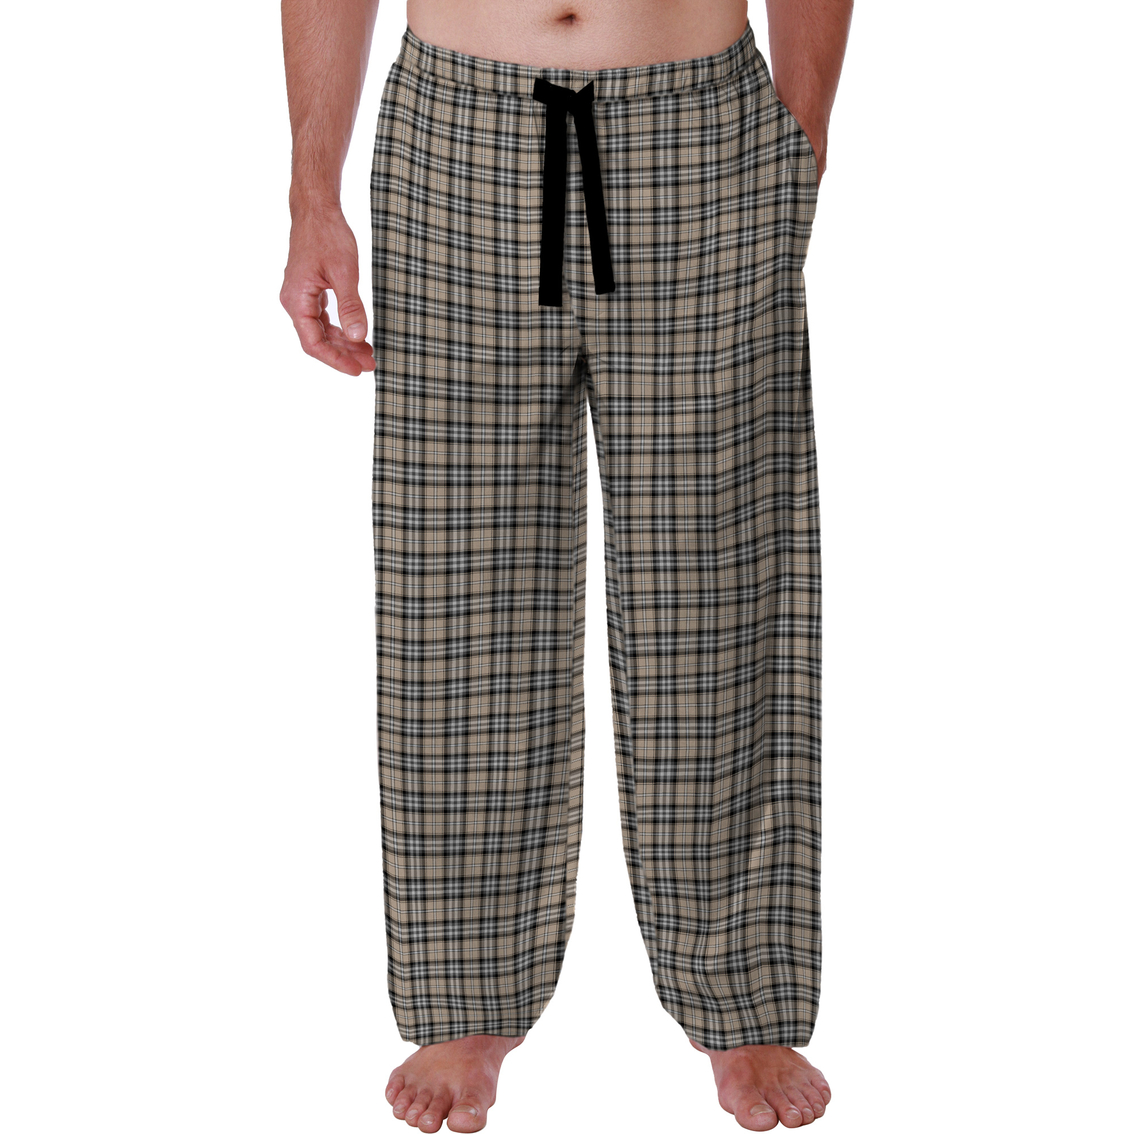 Van Heusen Sleep Pants | Pajamas & Robes | Clothing & Accessories ...